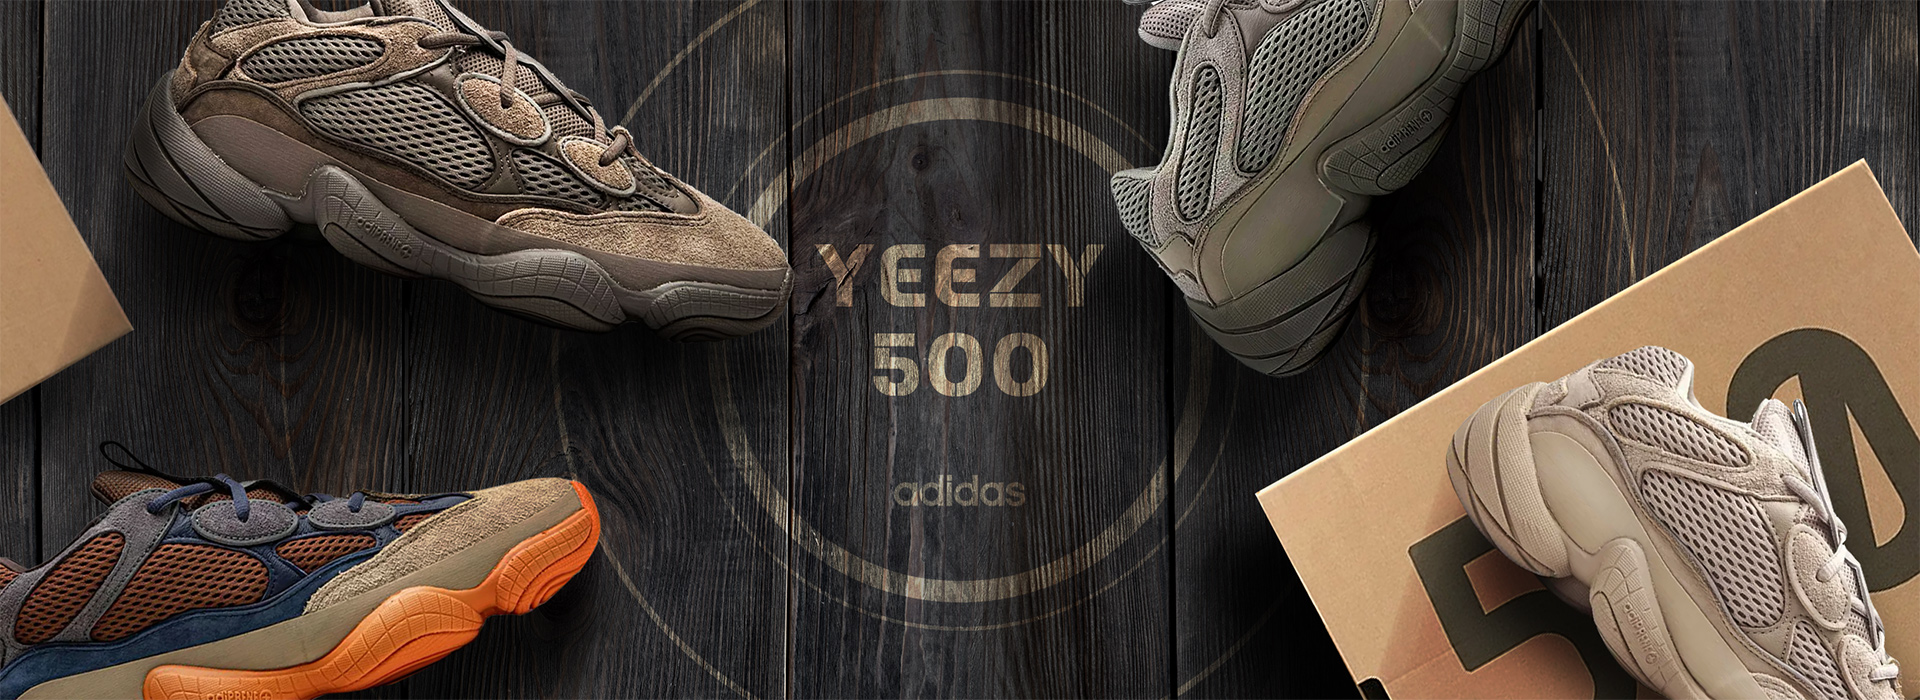 Adidas Yeezy 500